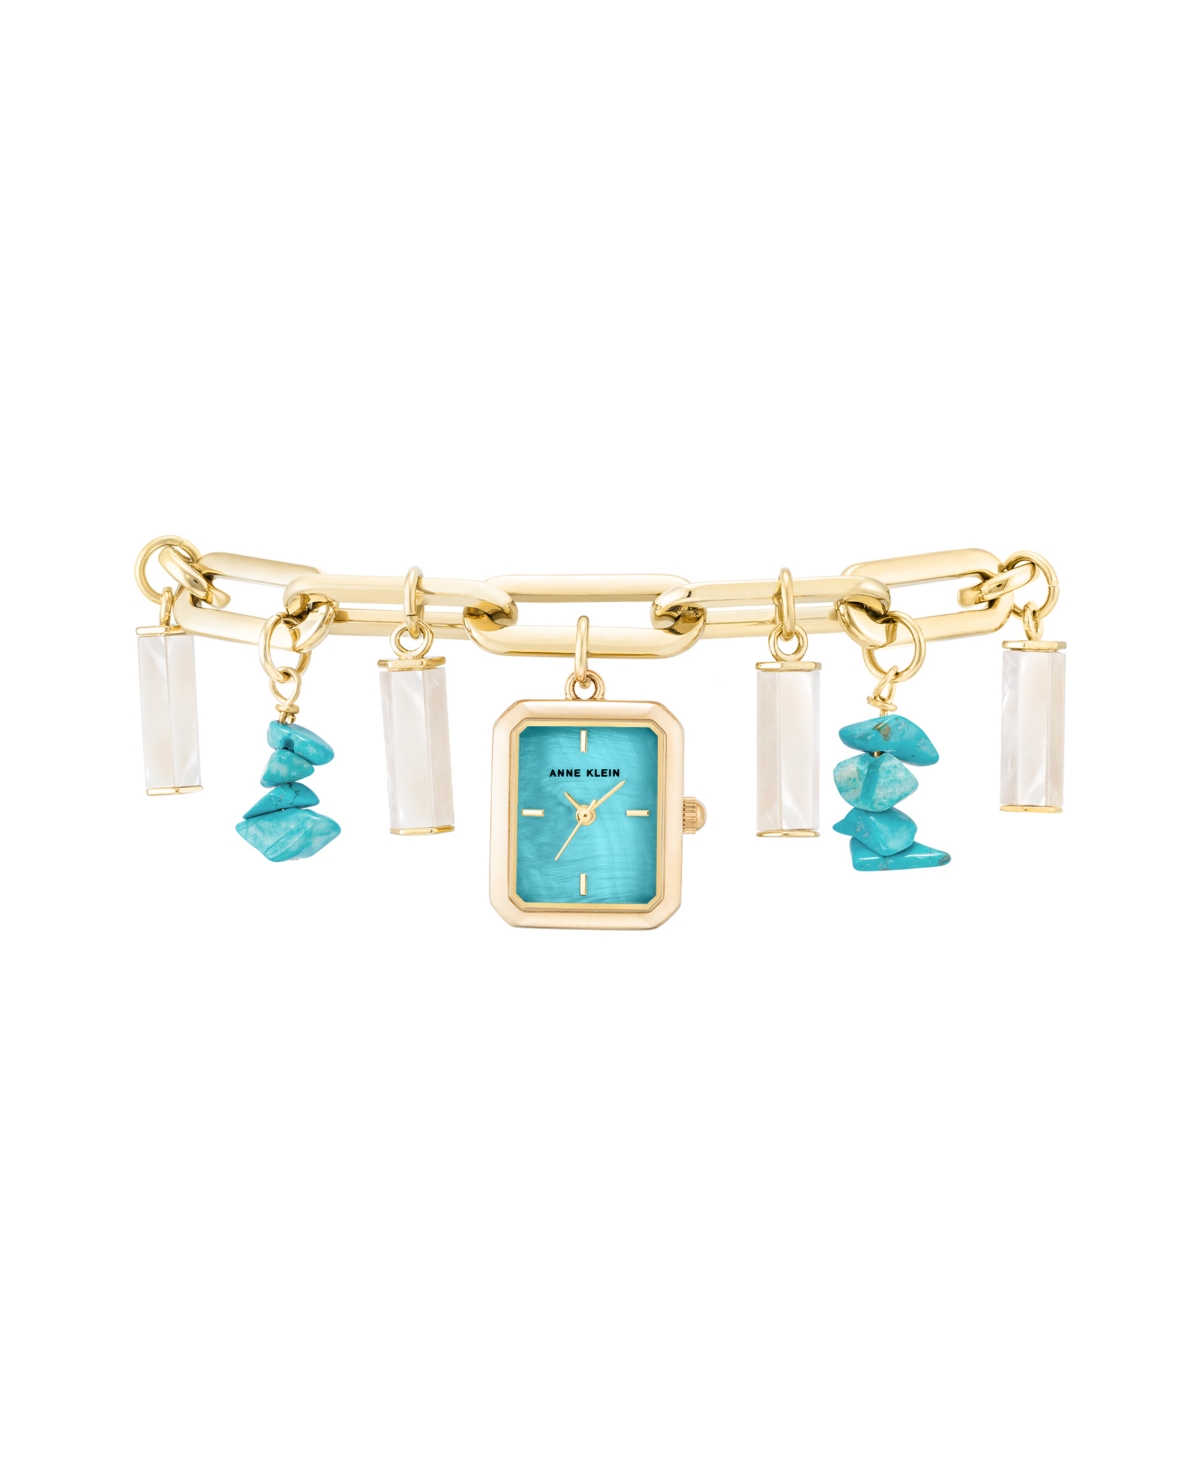 Women's Quartz Gold-Tone Alloy Turquoise Charm Bracelet Watch, 18mm